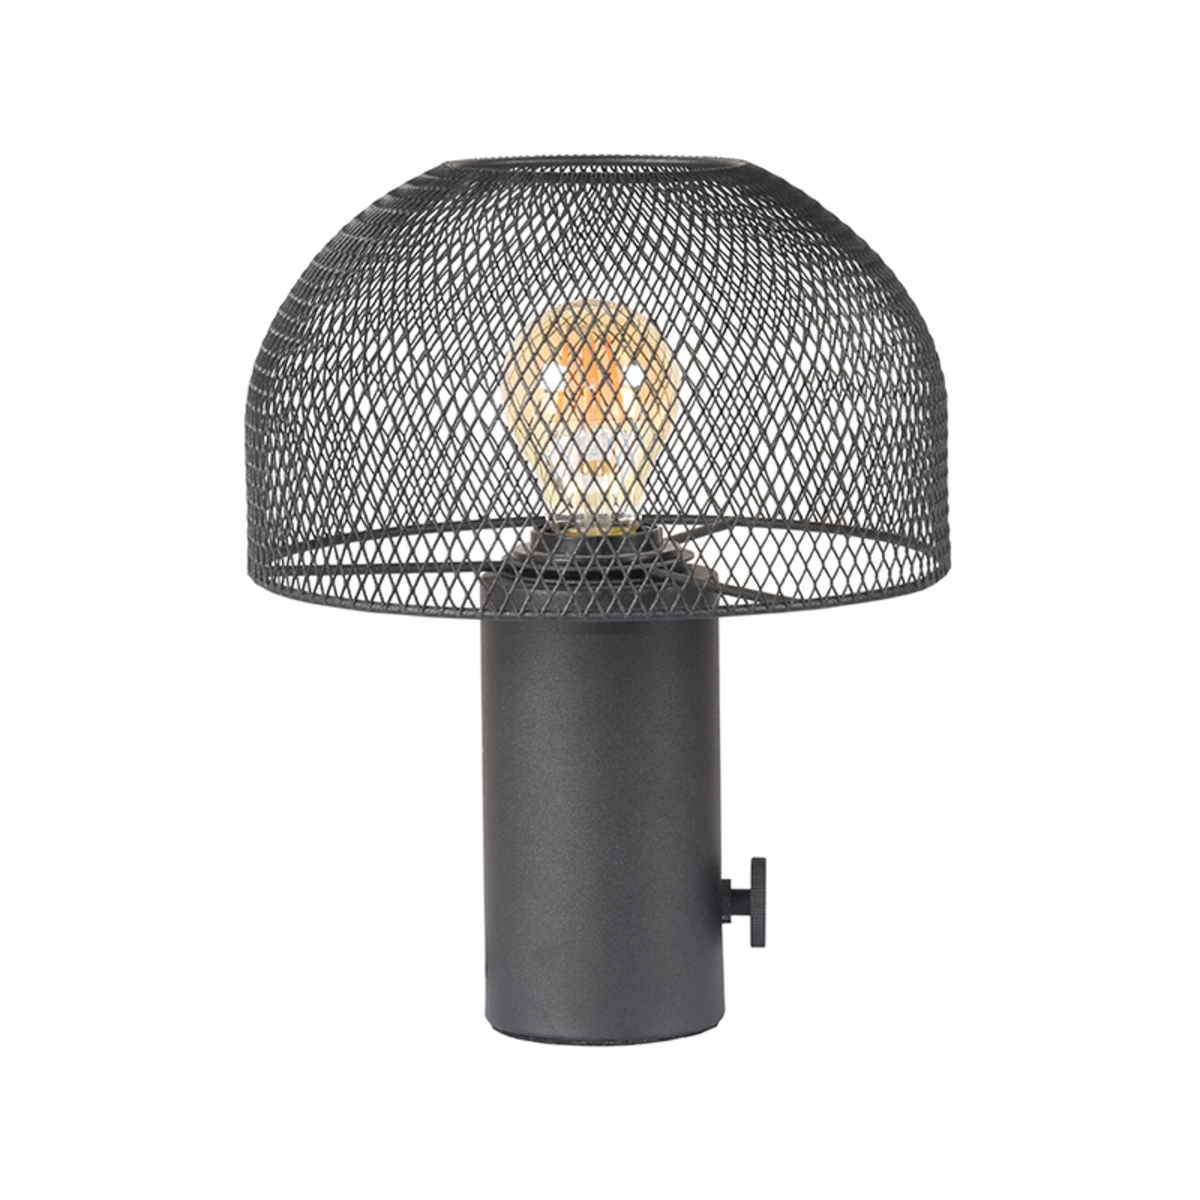 LABEL51 Tafellamp Fungo - Zwart - Metaal